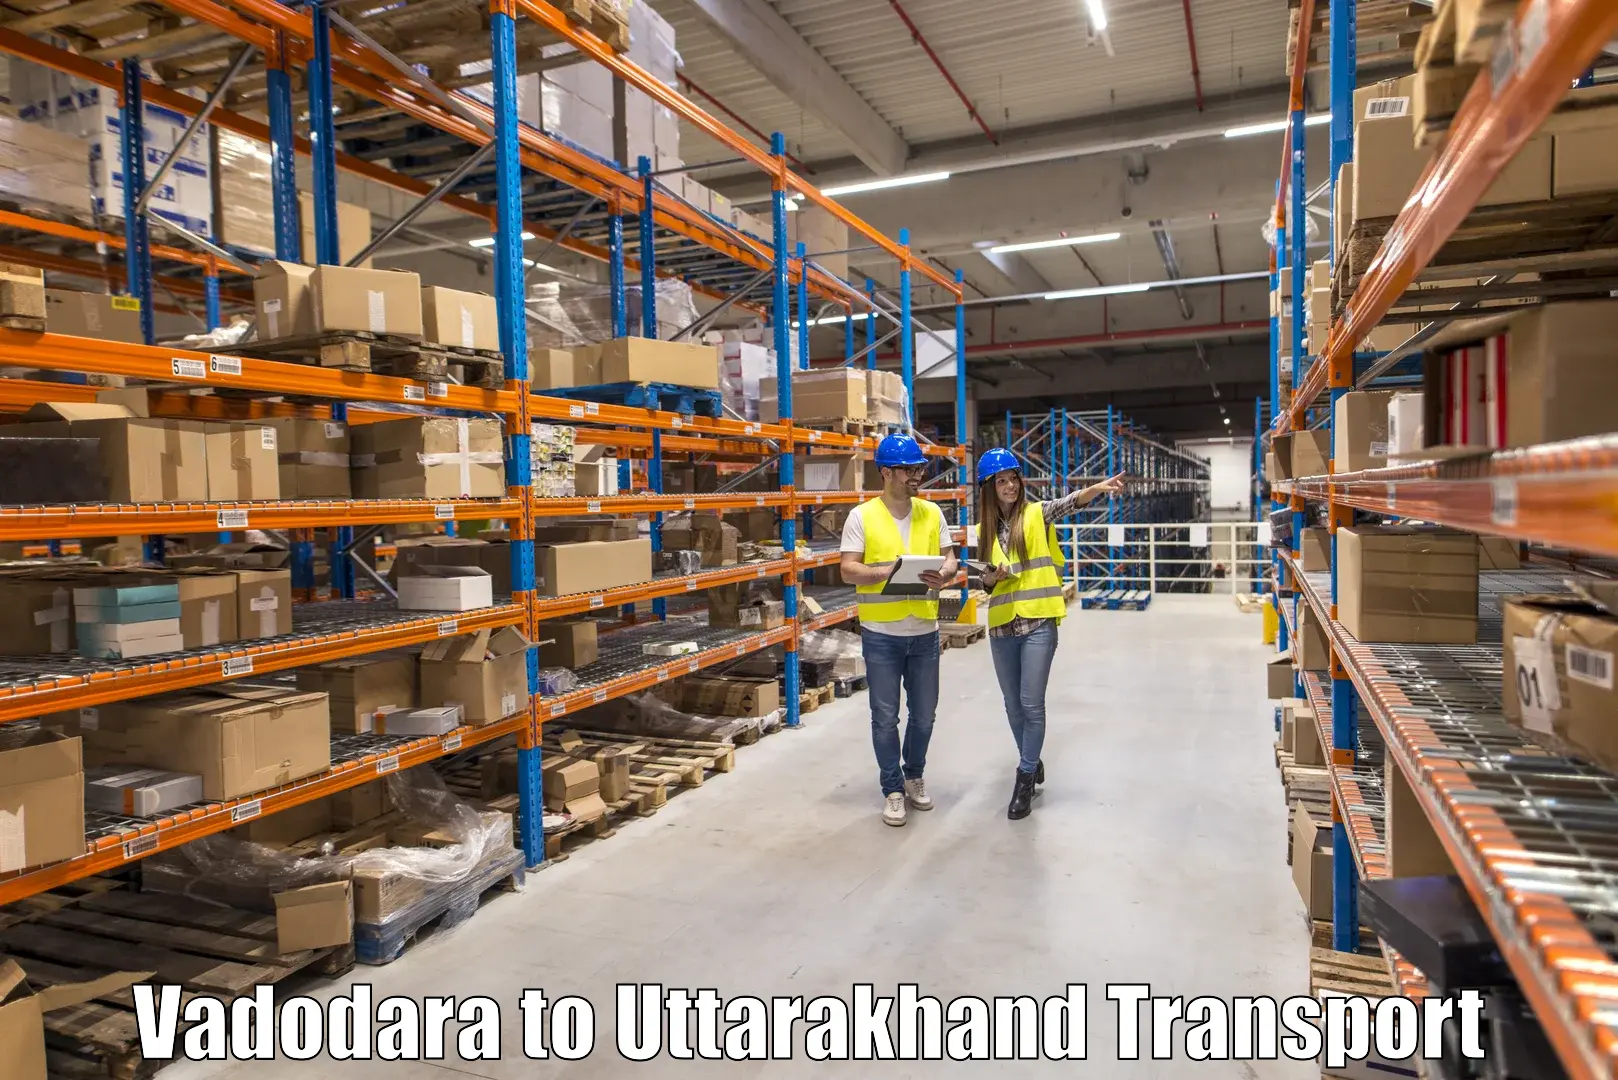 Truck transport companies in India in Vadodara to Gumkhal